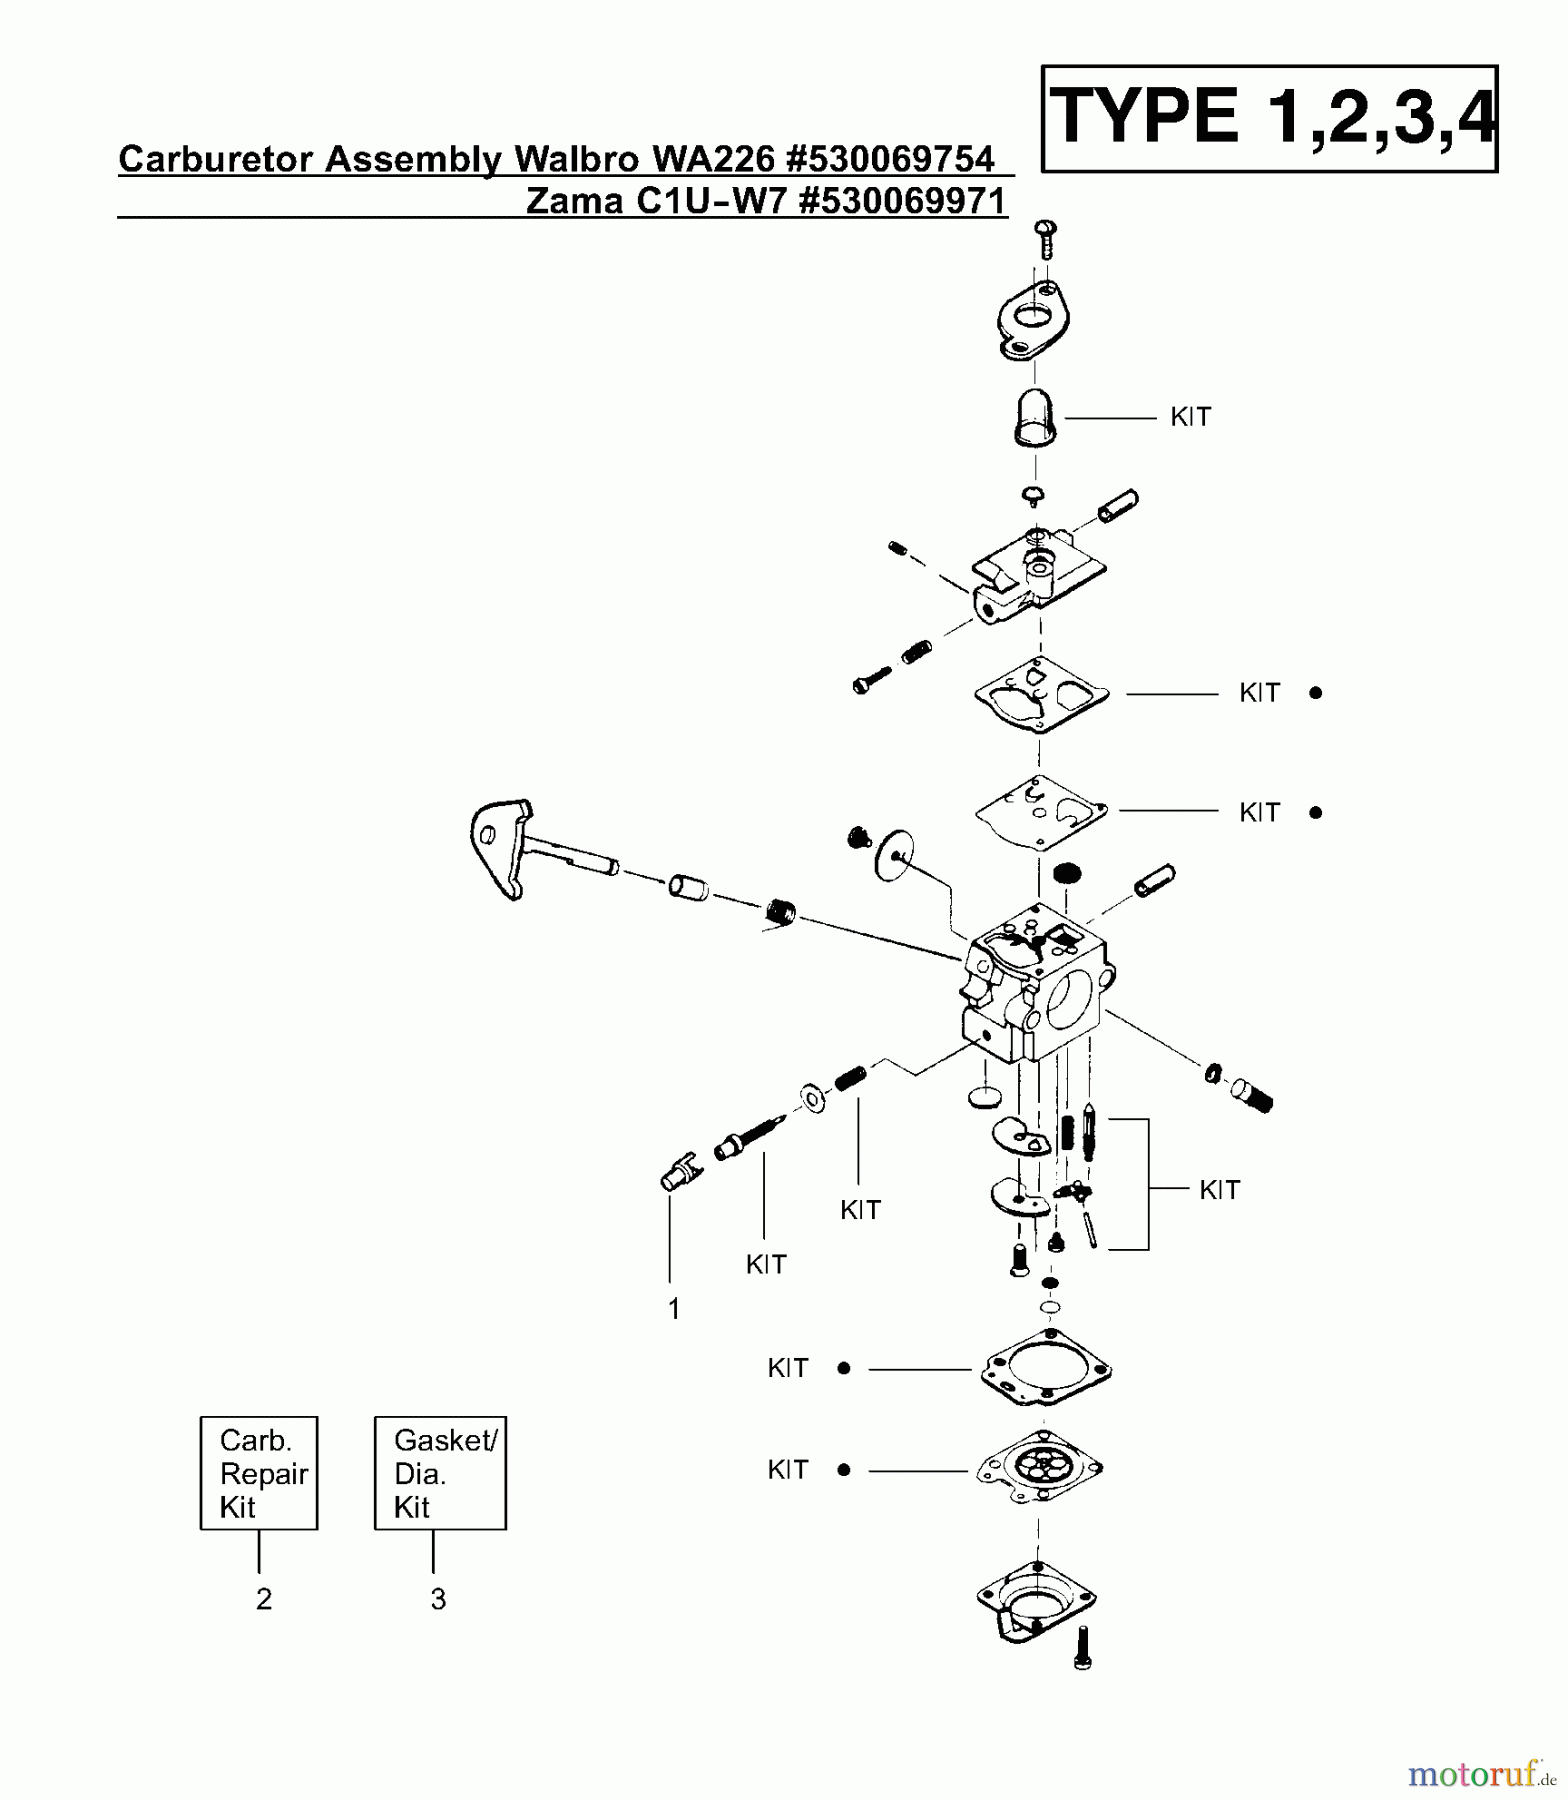  Poulan / Weed Eater Motorsensen, Trimmer XT400 (Type 3) - Weed Eater String Trimmer Carburetor Assembly (Walbro WA226) P/N 530069754, (Zama C1U-W7) P/N 530069971